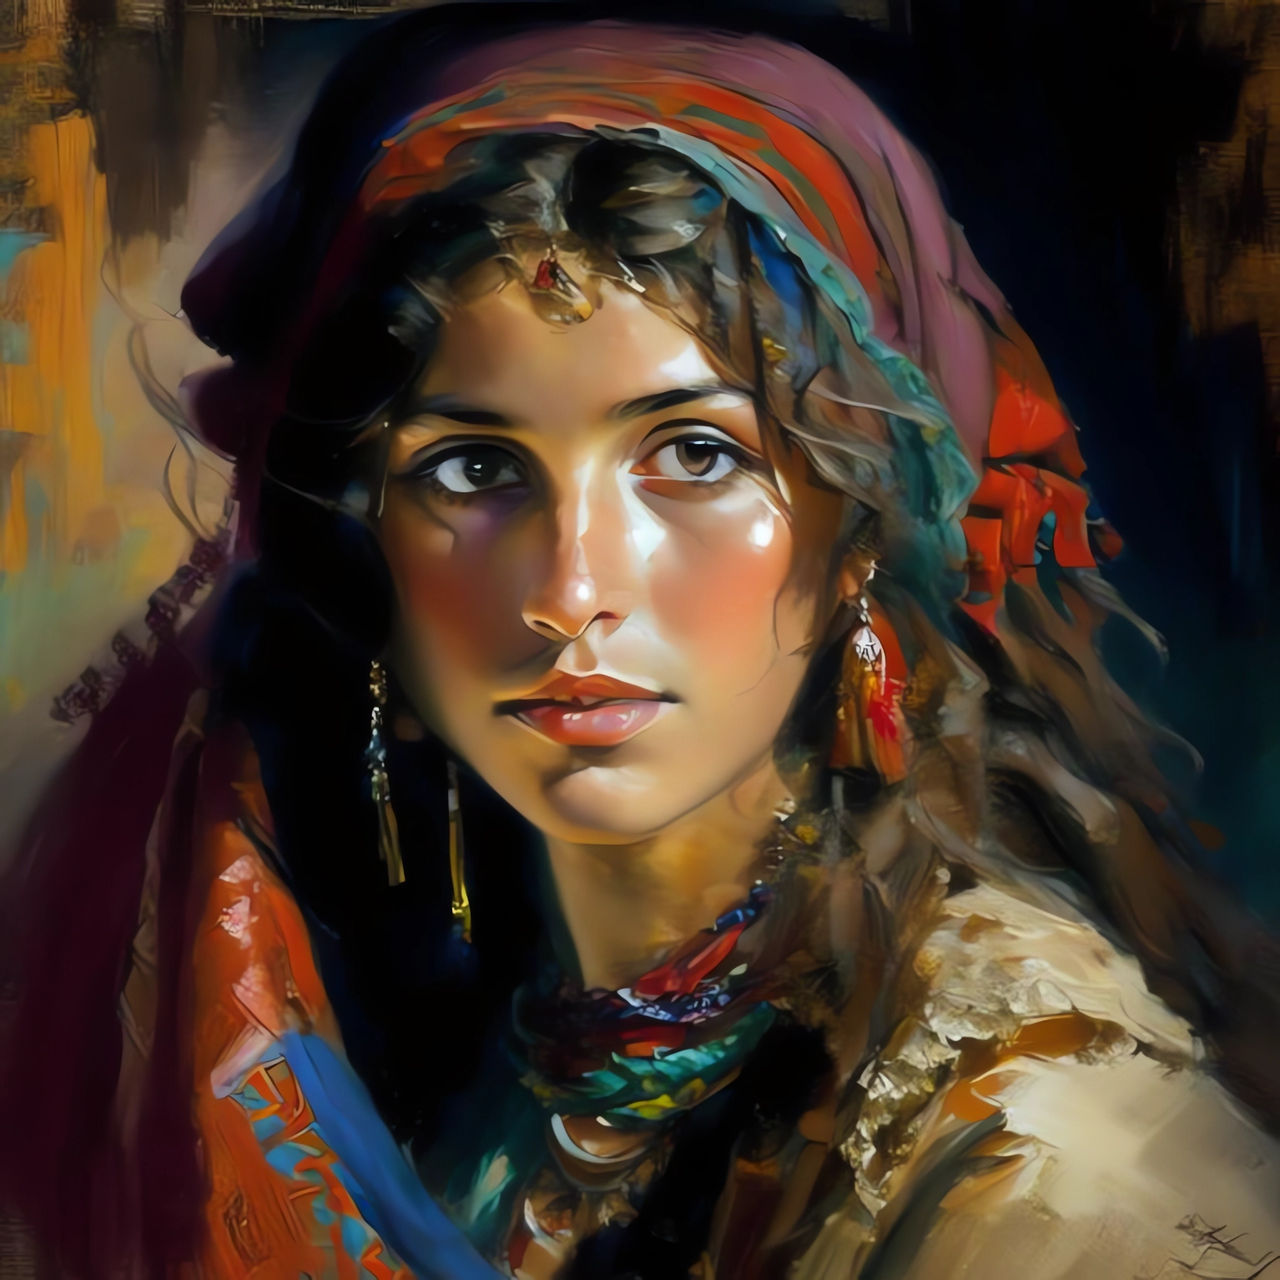 Gypsy Youth by DoraKora on DeviantArt